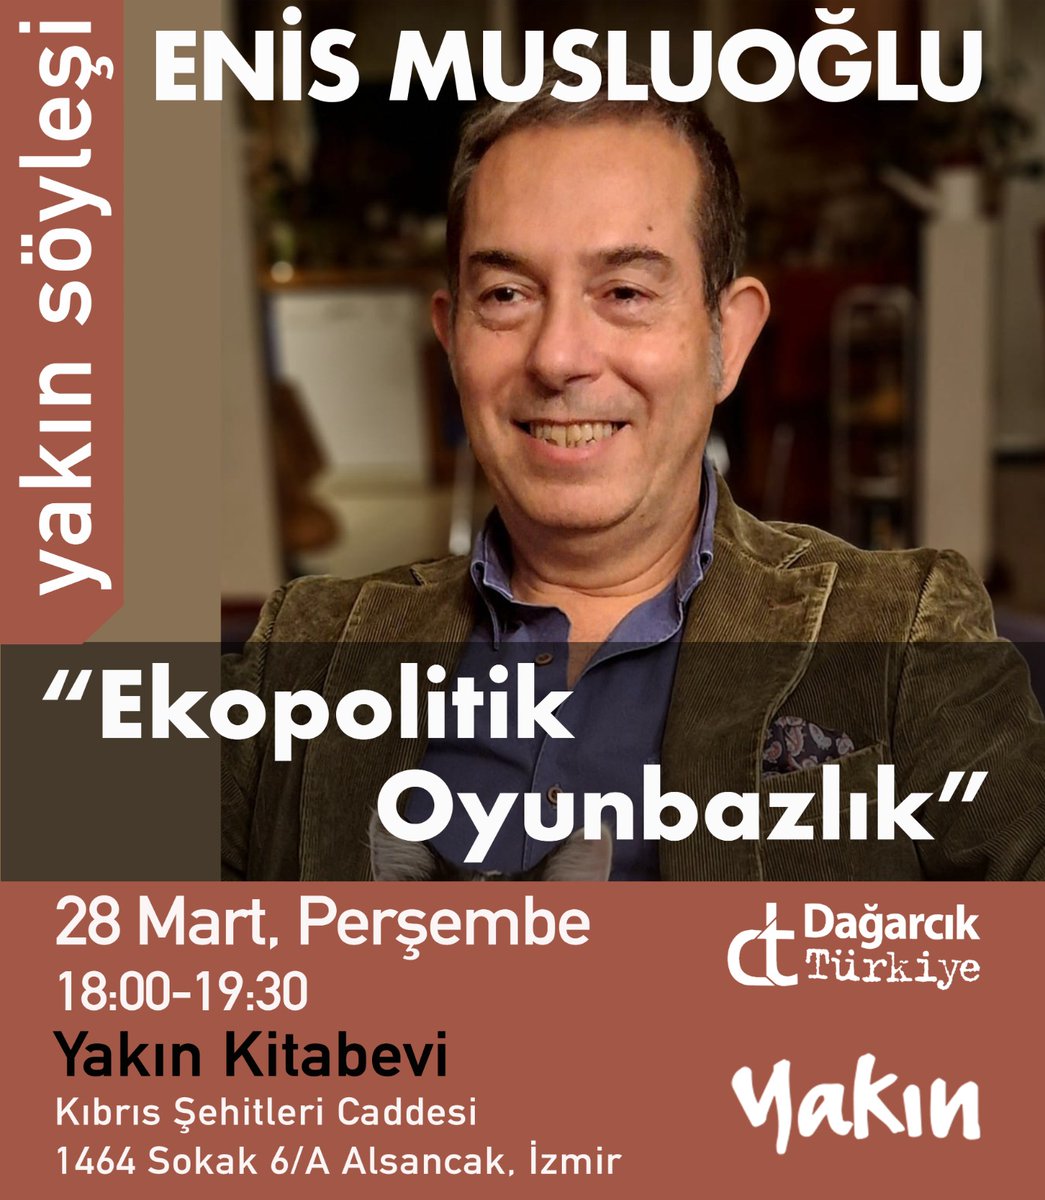 Dağarcık Türkiye Genel Yayın Yönetmeni Enis Musluoğlu'nun 'Ekopolitik Oyunbazlık' konulu söyleşisine tüm okurlarımız davetlidir. Söyleşi, Instagram üzerinden canlı olarak yayınlanacaktır.